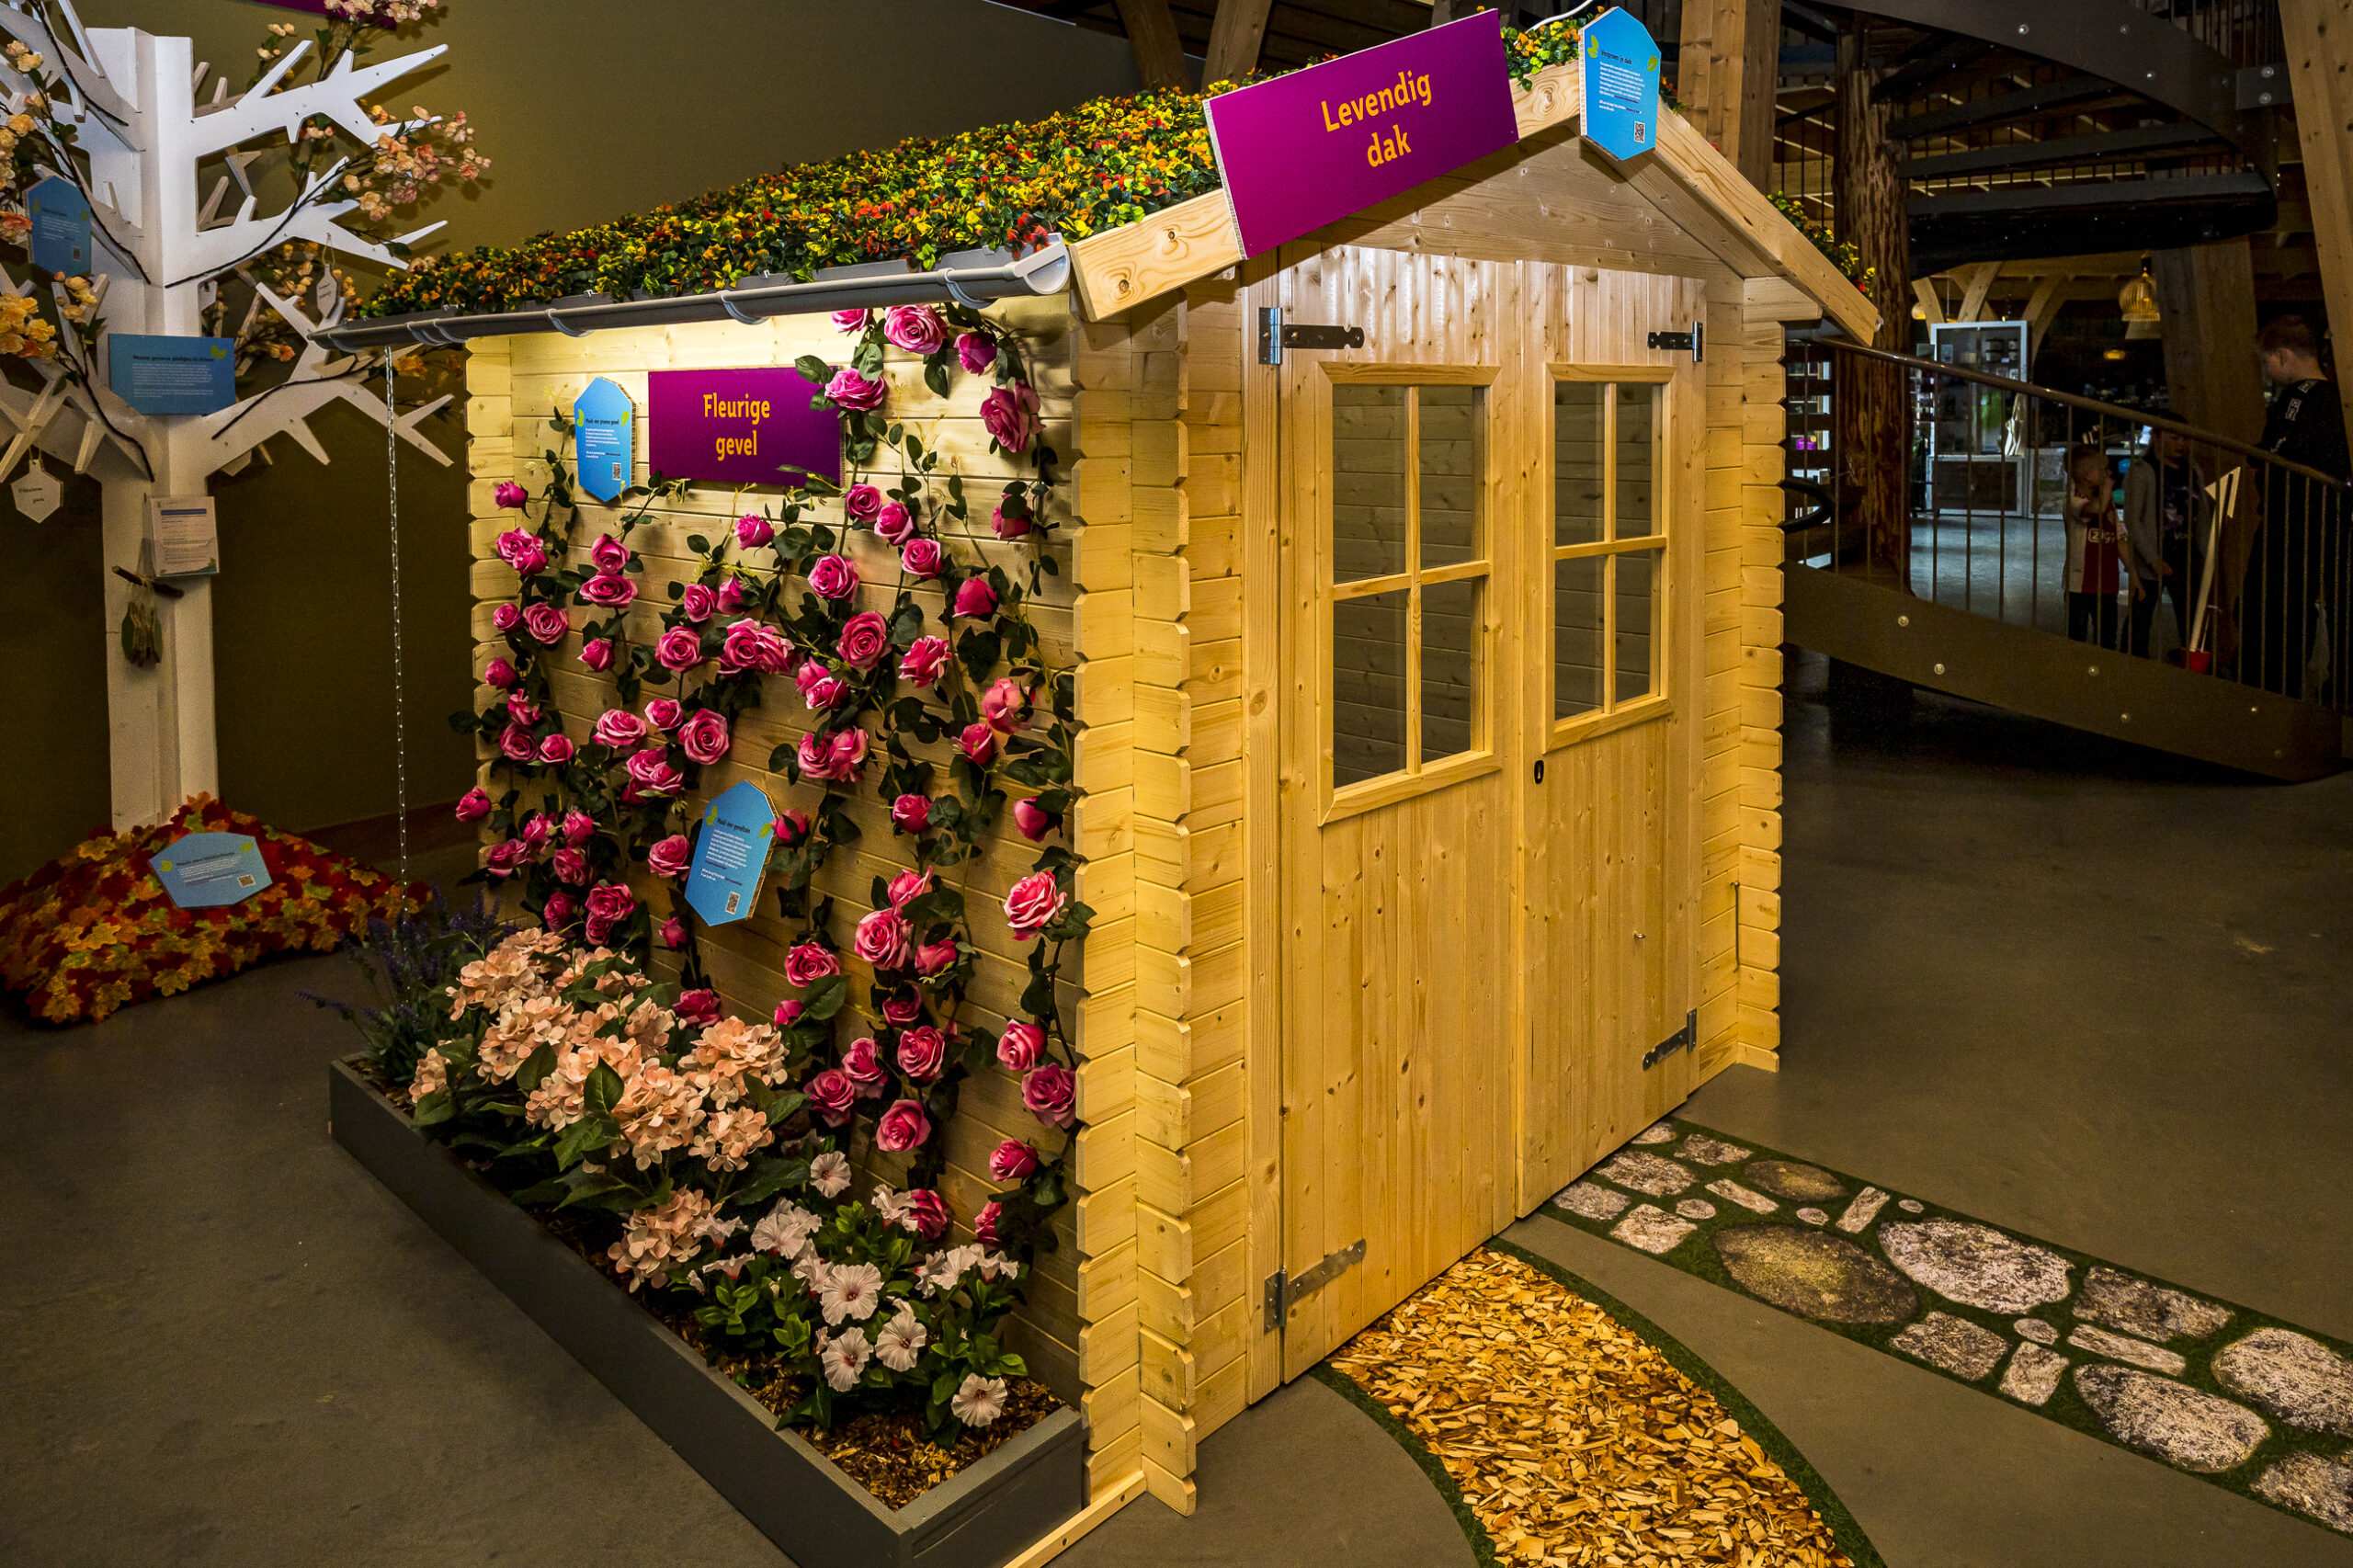 Houten tuinhuisje van de expositie 'Ga voor groen' in het Duurzaamheidscentrum Assen. Aan de zijkant zie je een zelf-doe-tip, namelijk het maken van een bloemrijke geveltuin.